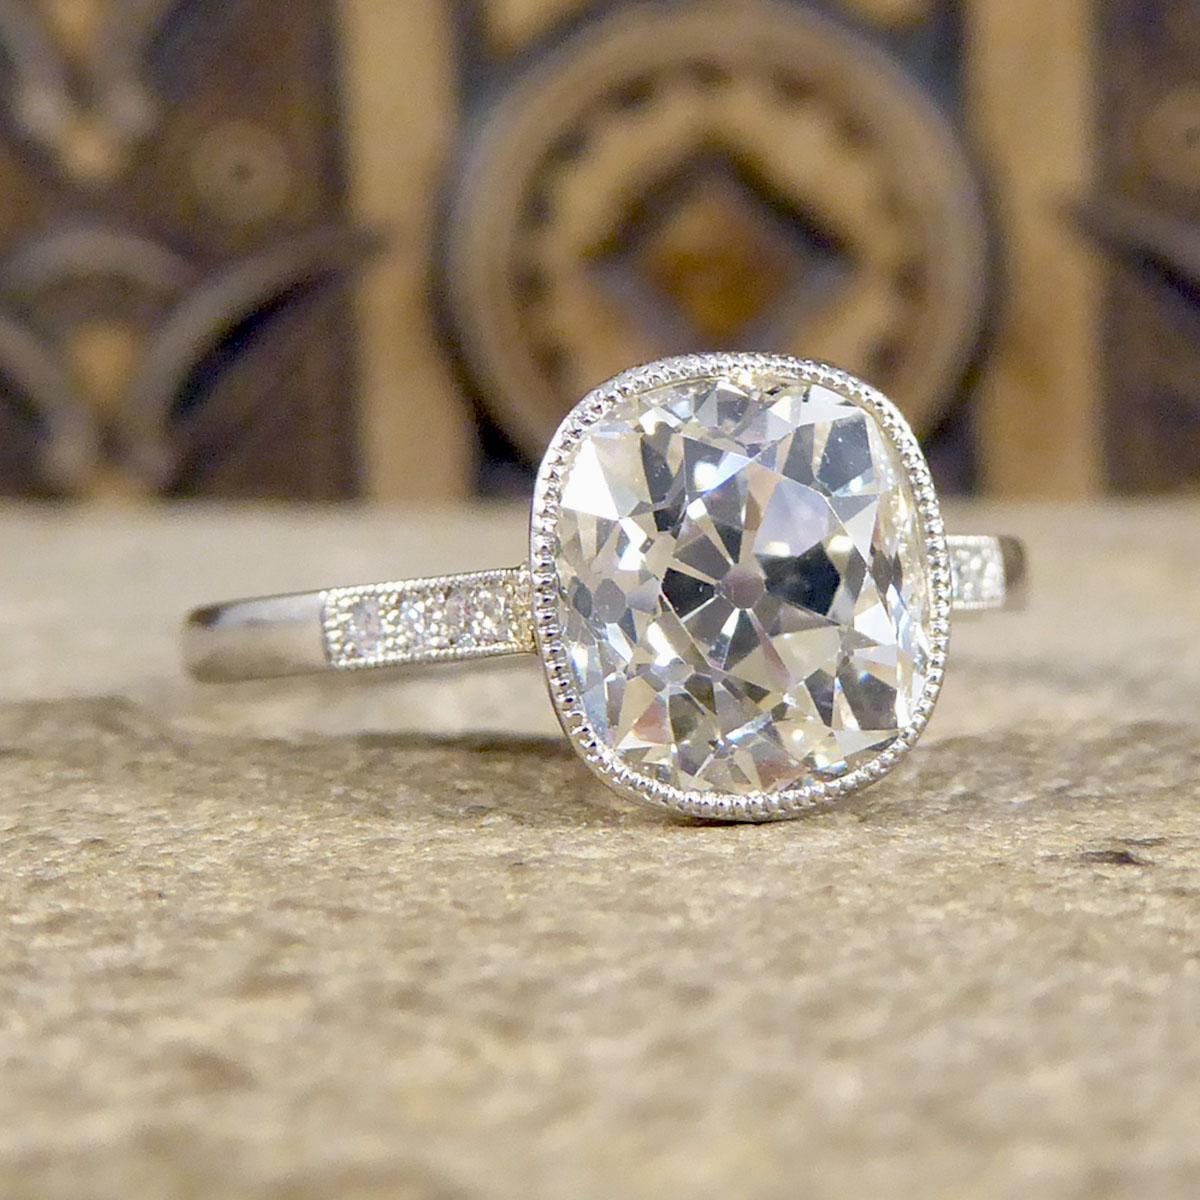 Dieser wunderschön funkelnde Verlobungsring trägt einen alten Diamanten im Kissenschliff mit einem Gewicht von 2,35 ct. und ist in einer Platinfassung mit Millegrain-Rand und einer Drahtgalerie mit ausgeschnittenen Diamanten gefasst. Ein klassischer